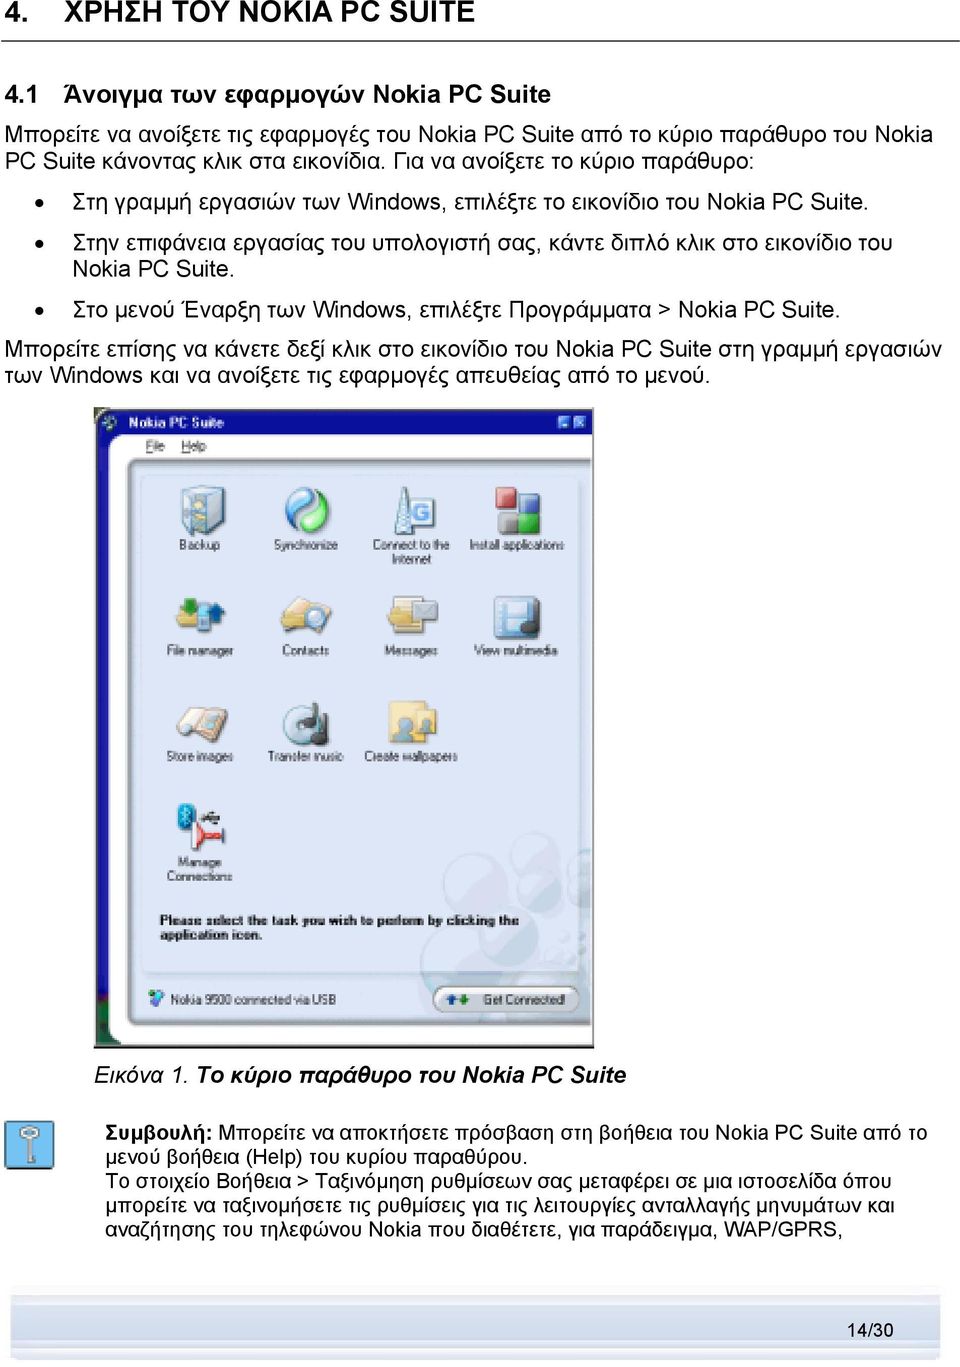 Στην επιφάνεια εργασίας του υπολογιστή σας, κάντε διπλό κλικ στο εικονίδιο του Nokia PC Suite. Στο μενού Έναρξη των Windows, επιλέξτε Προγράμματα > Nokia PC Suite.